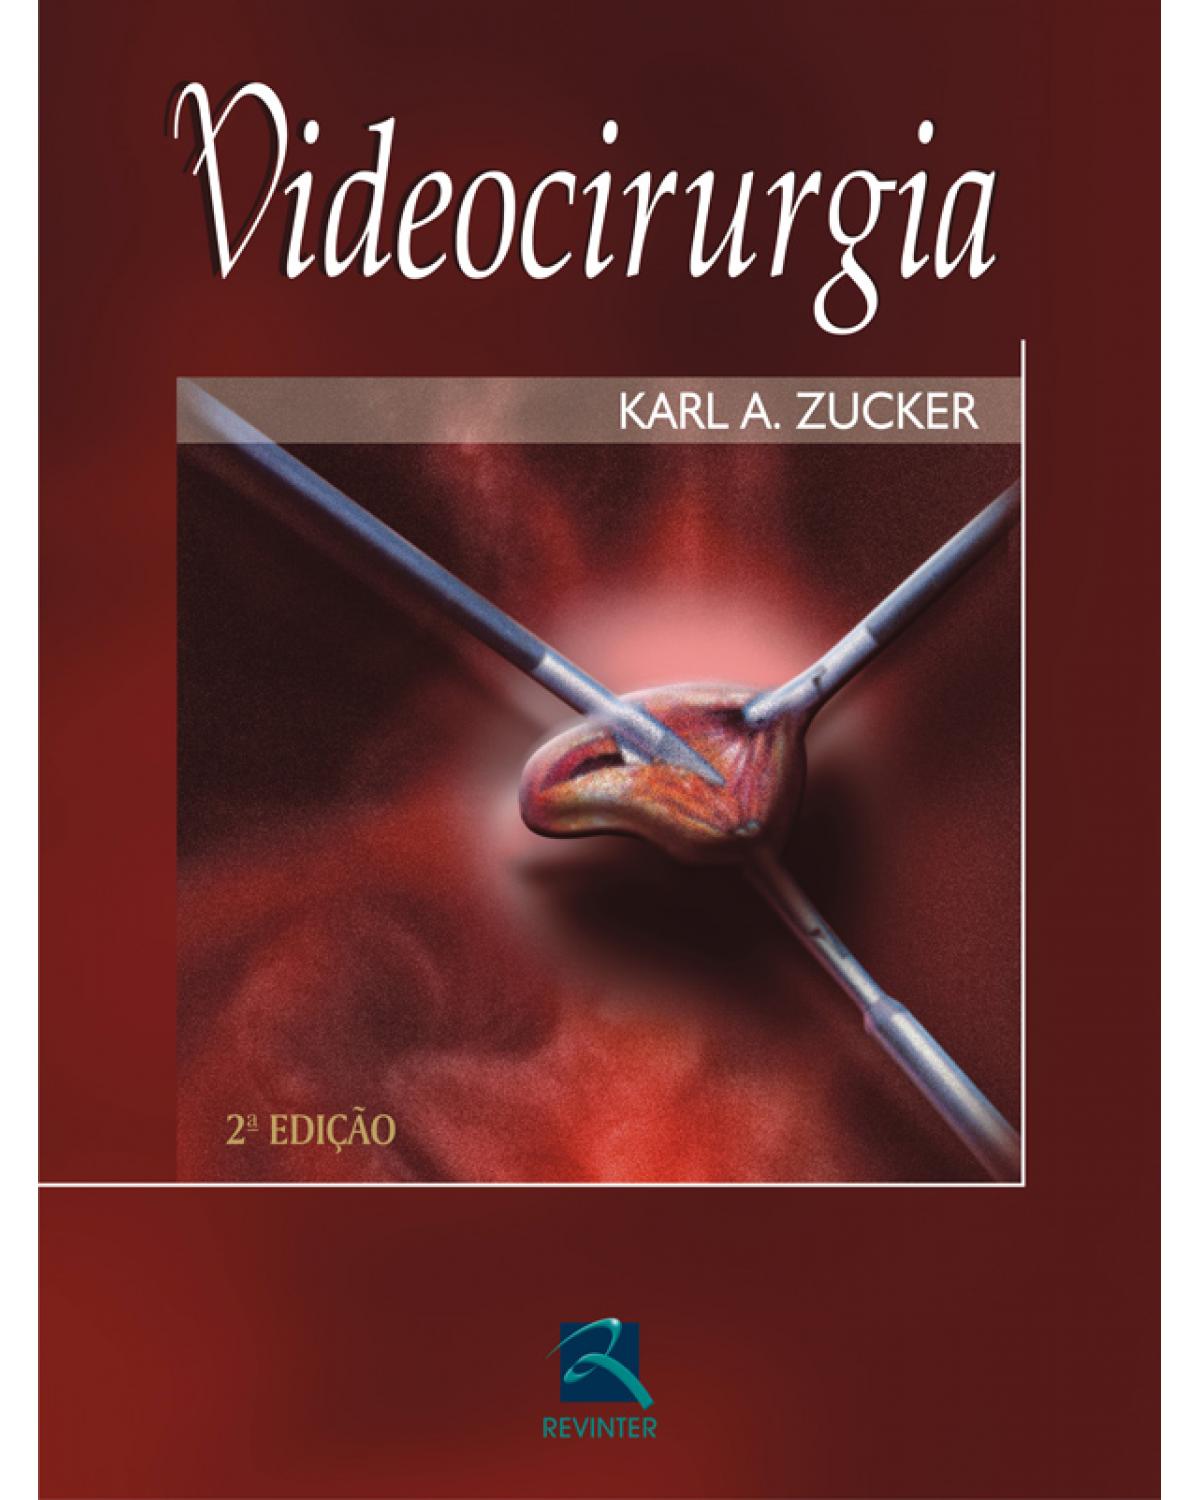 Videocirurgia - 2ª Edição | 2005